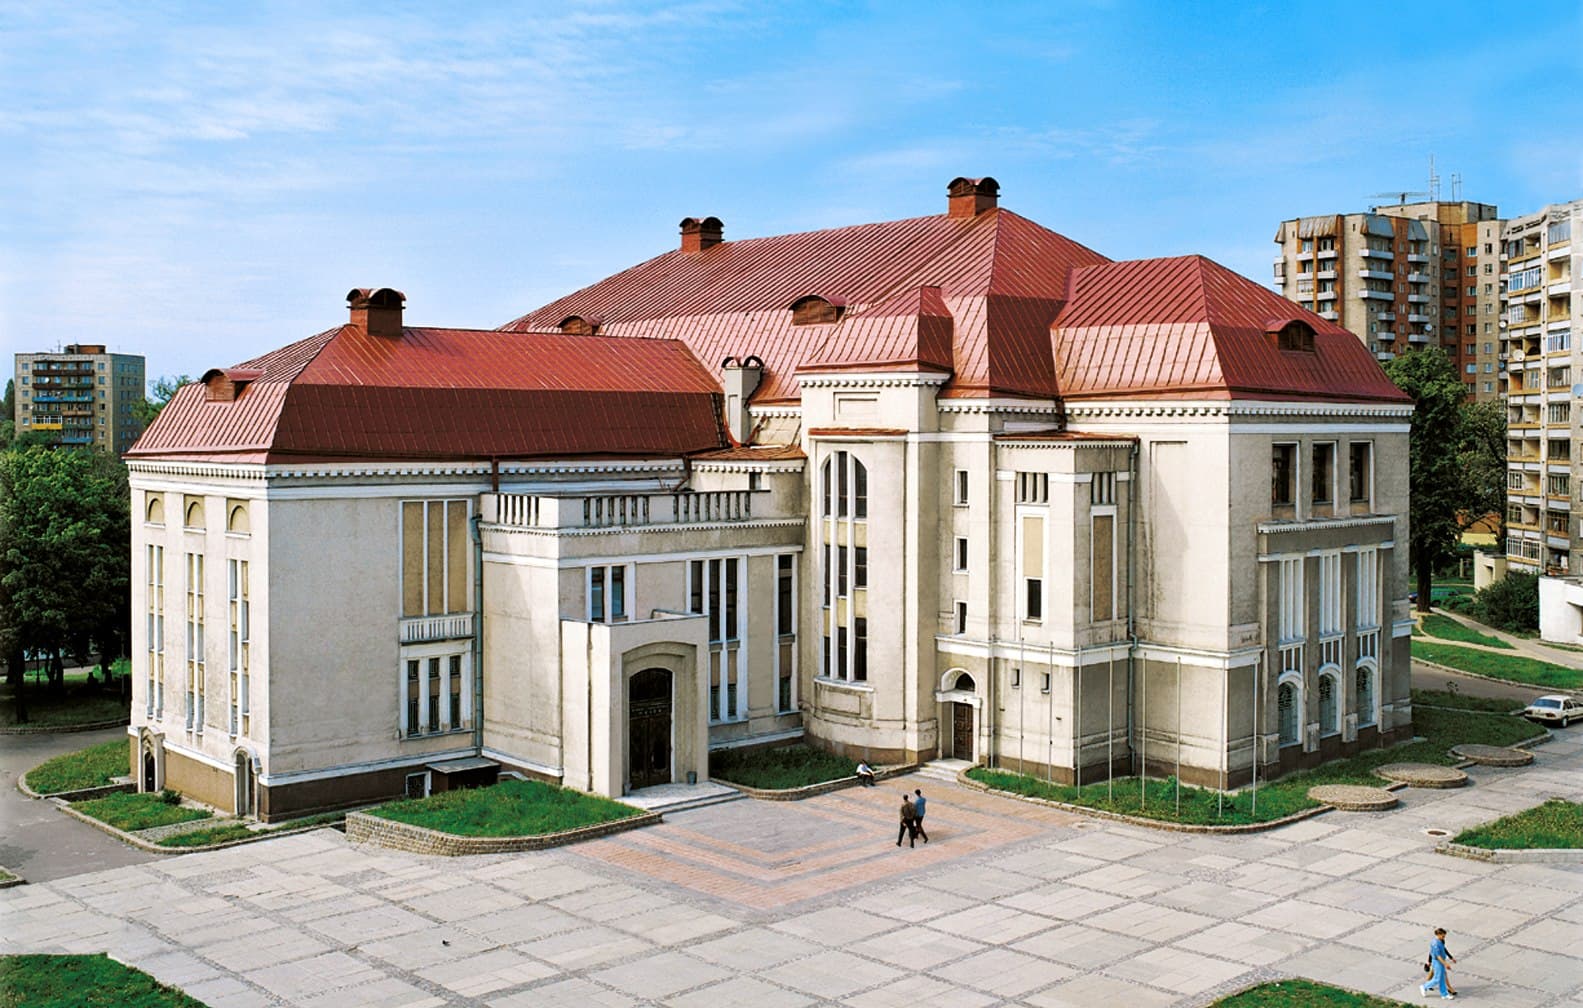 31 год назад Калининградский областной историко-художественный музей переехал в новое здание